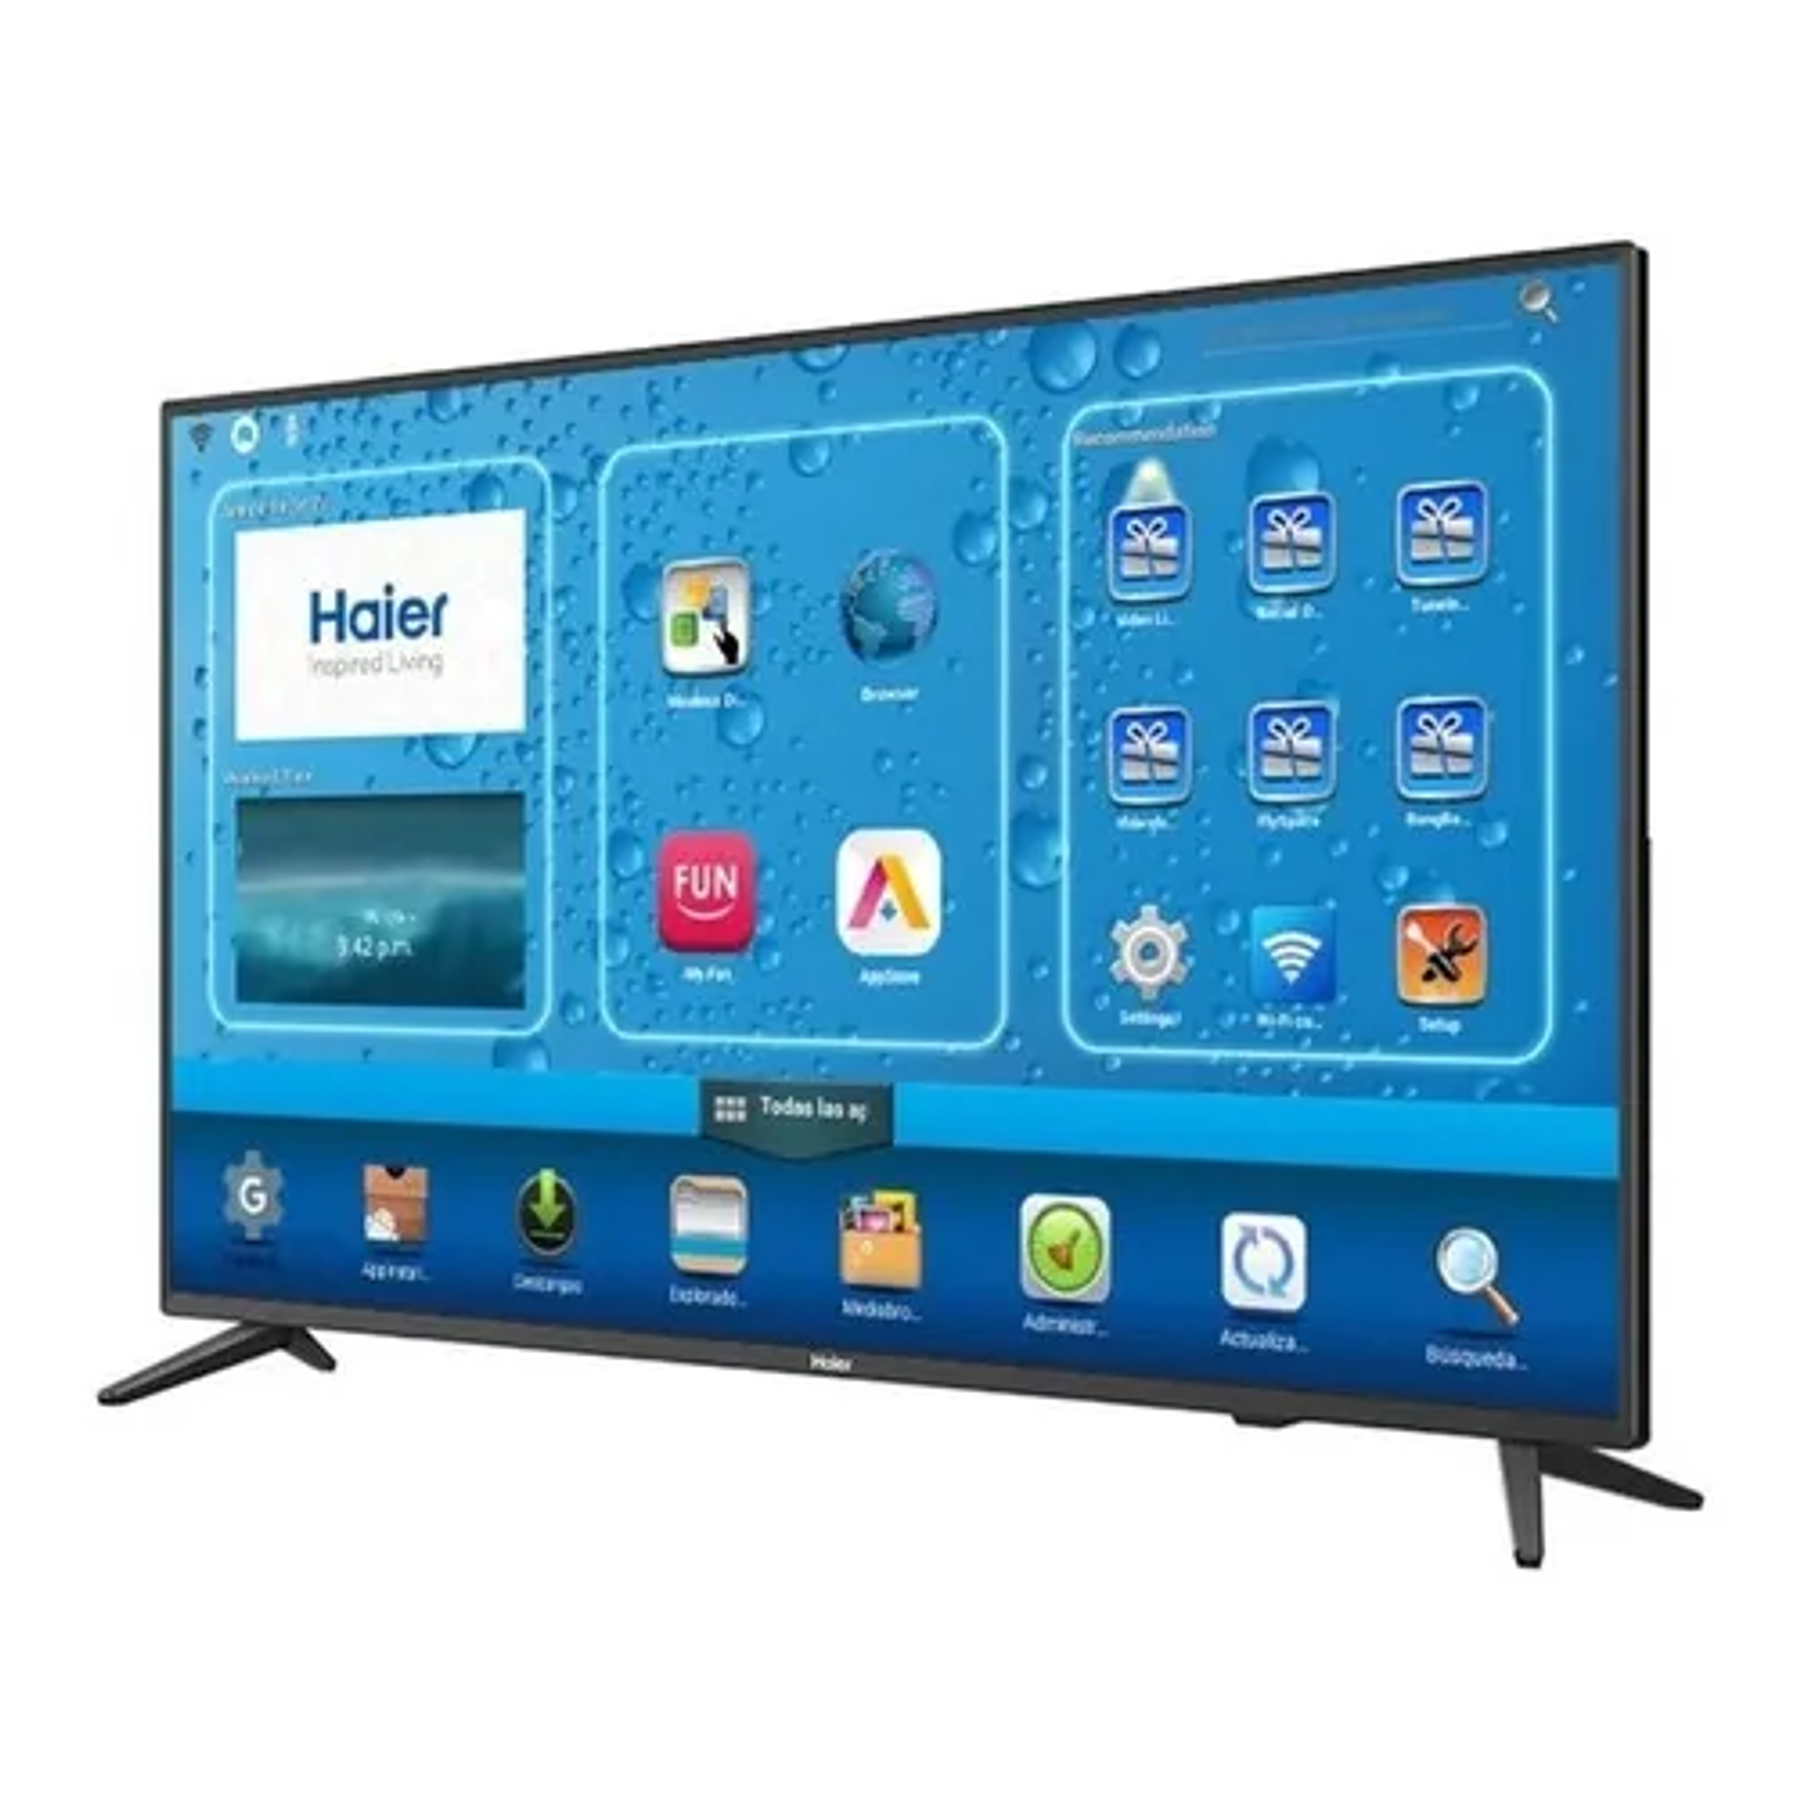 Haier Smart TV 4K UHD 55